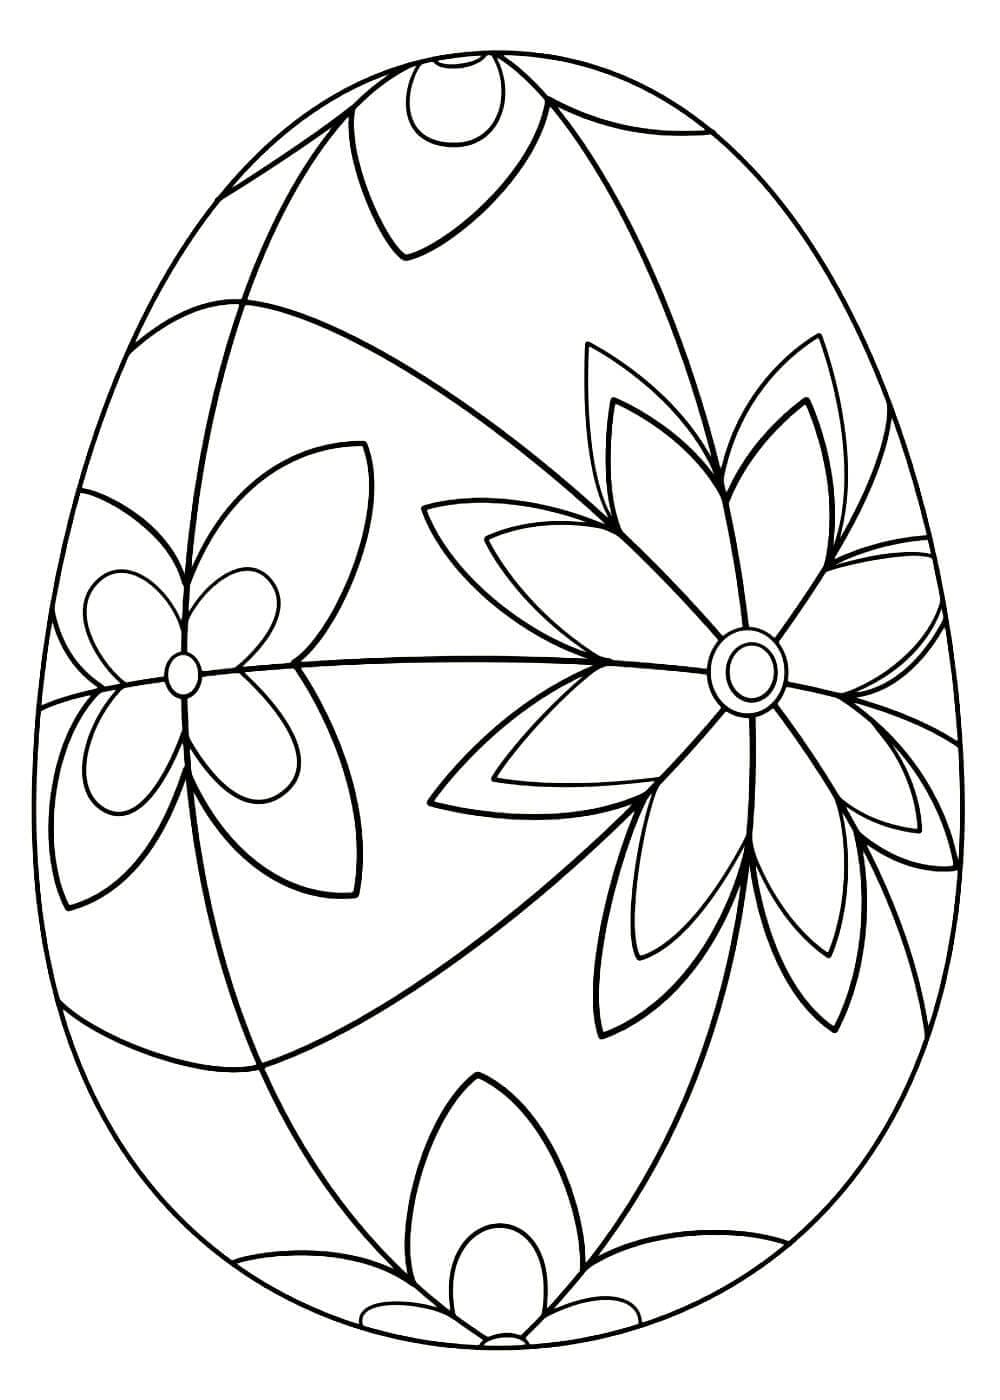 пасхальное яйцо раскраска для детей 3